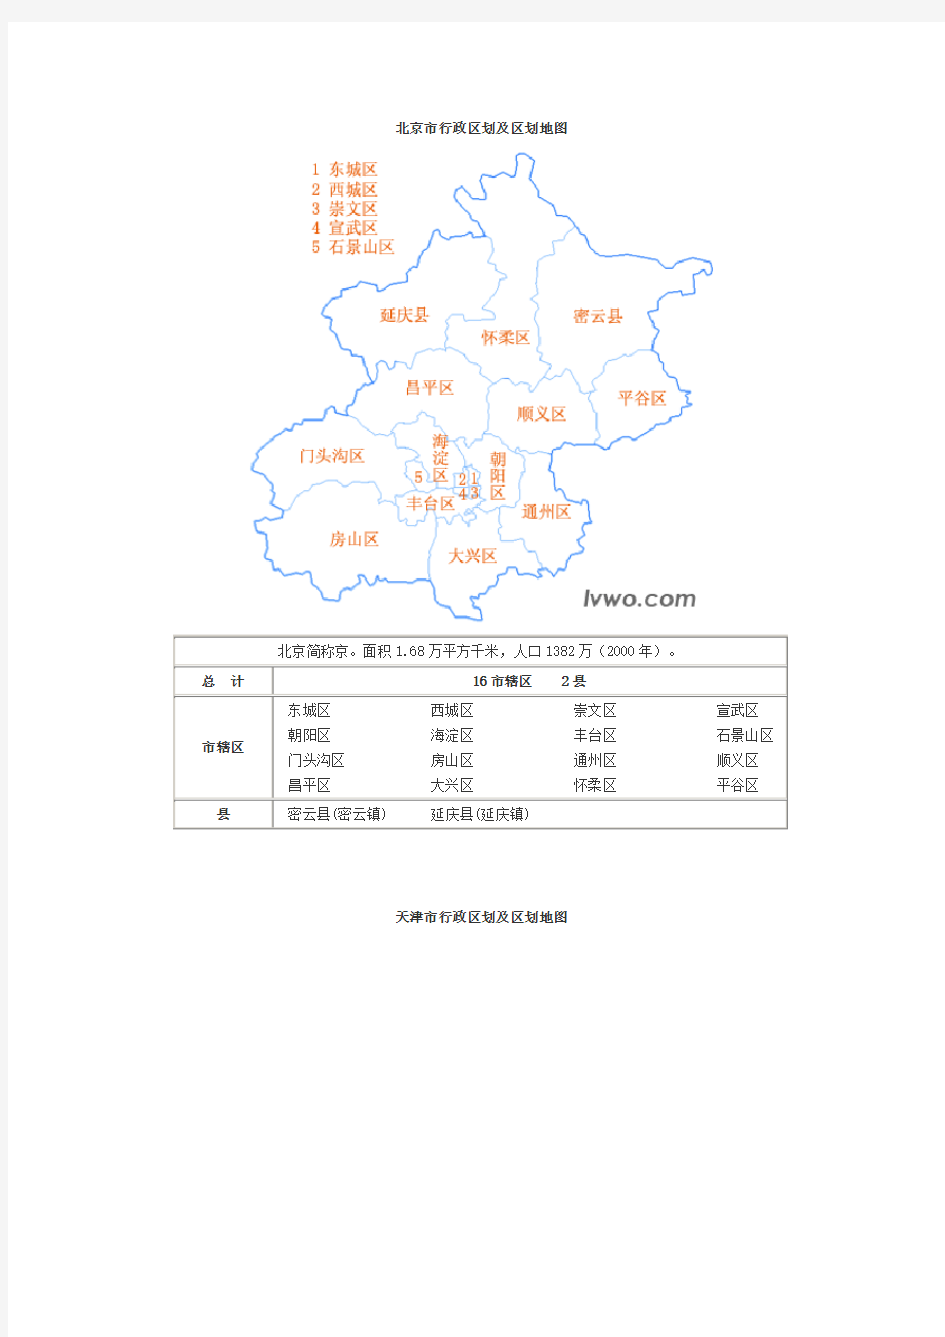 中国分省行政区划及区划地图